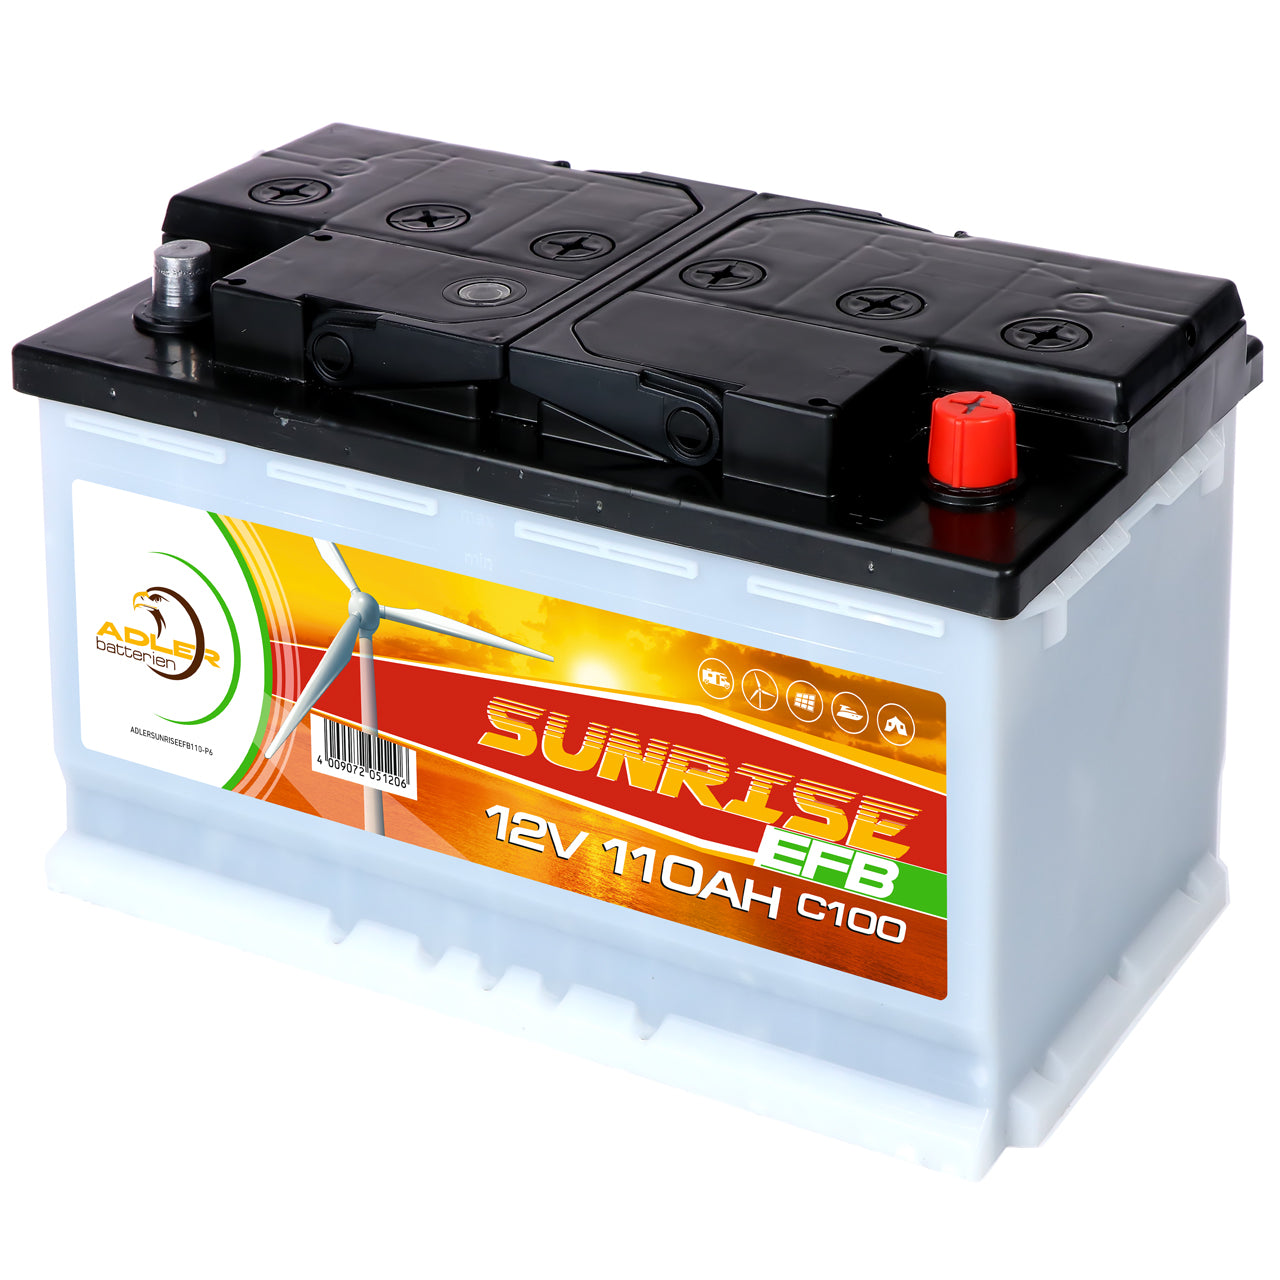 AGM Batterie Store Rich 110 – Eifel-Solar-Shop